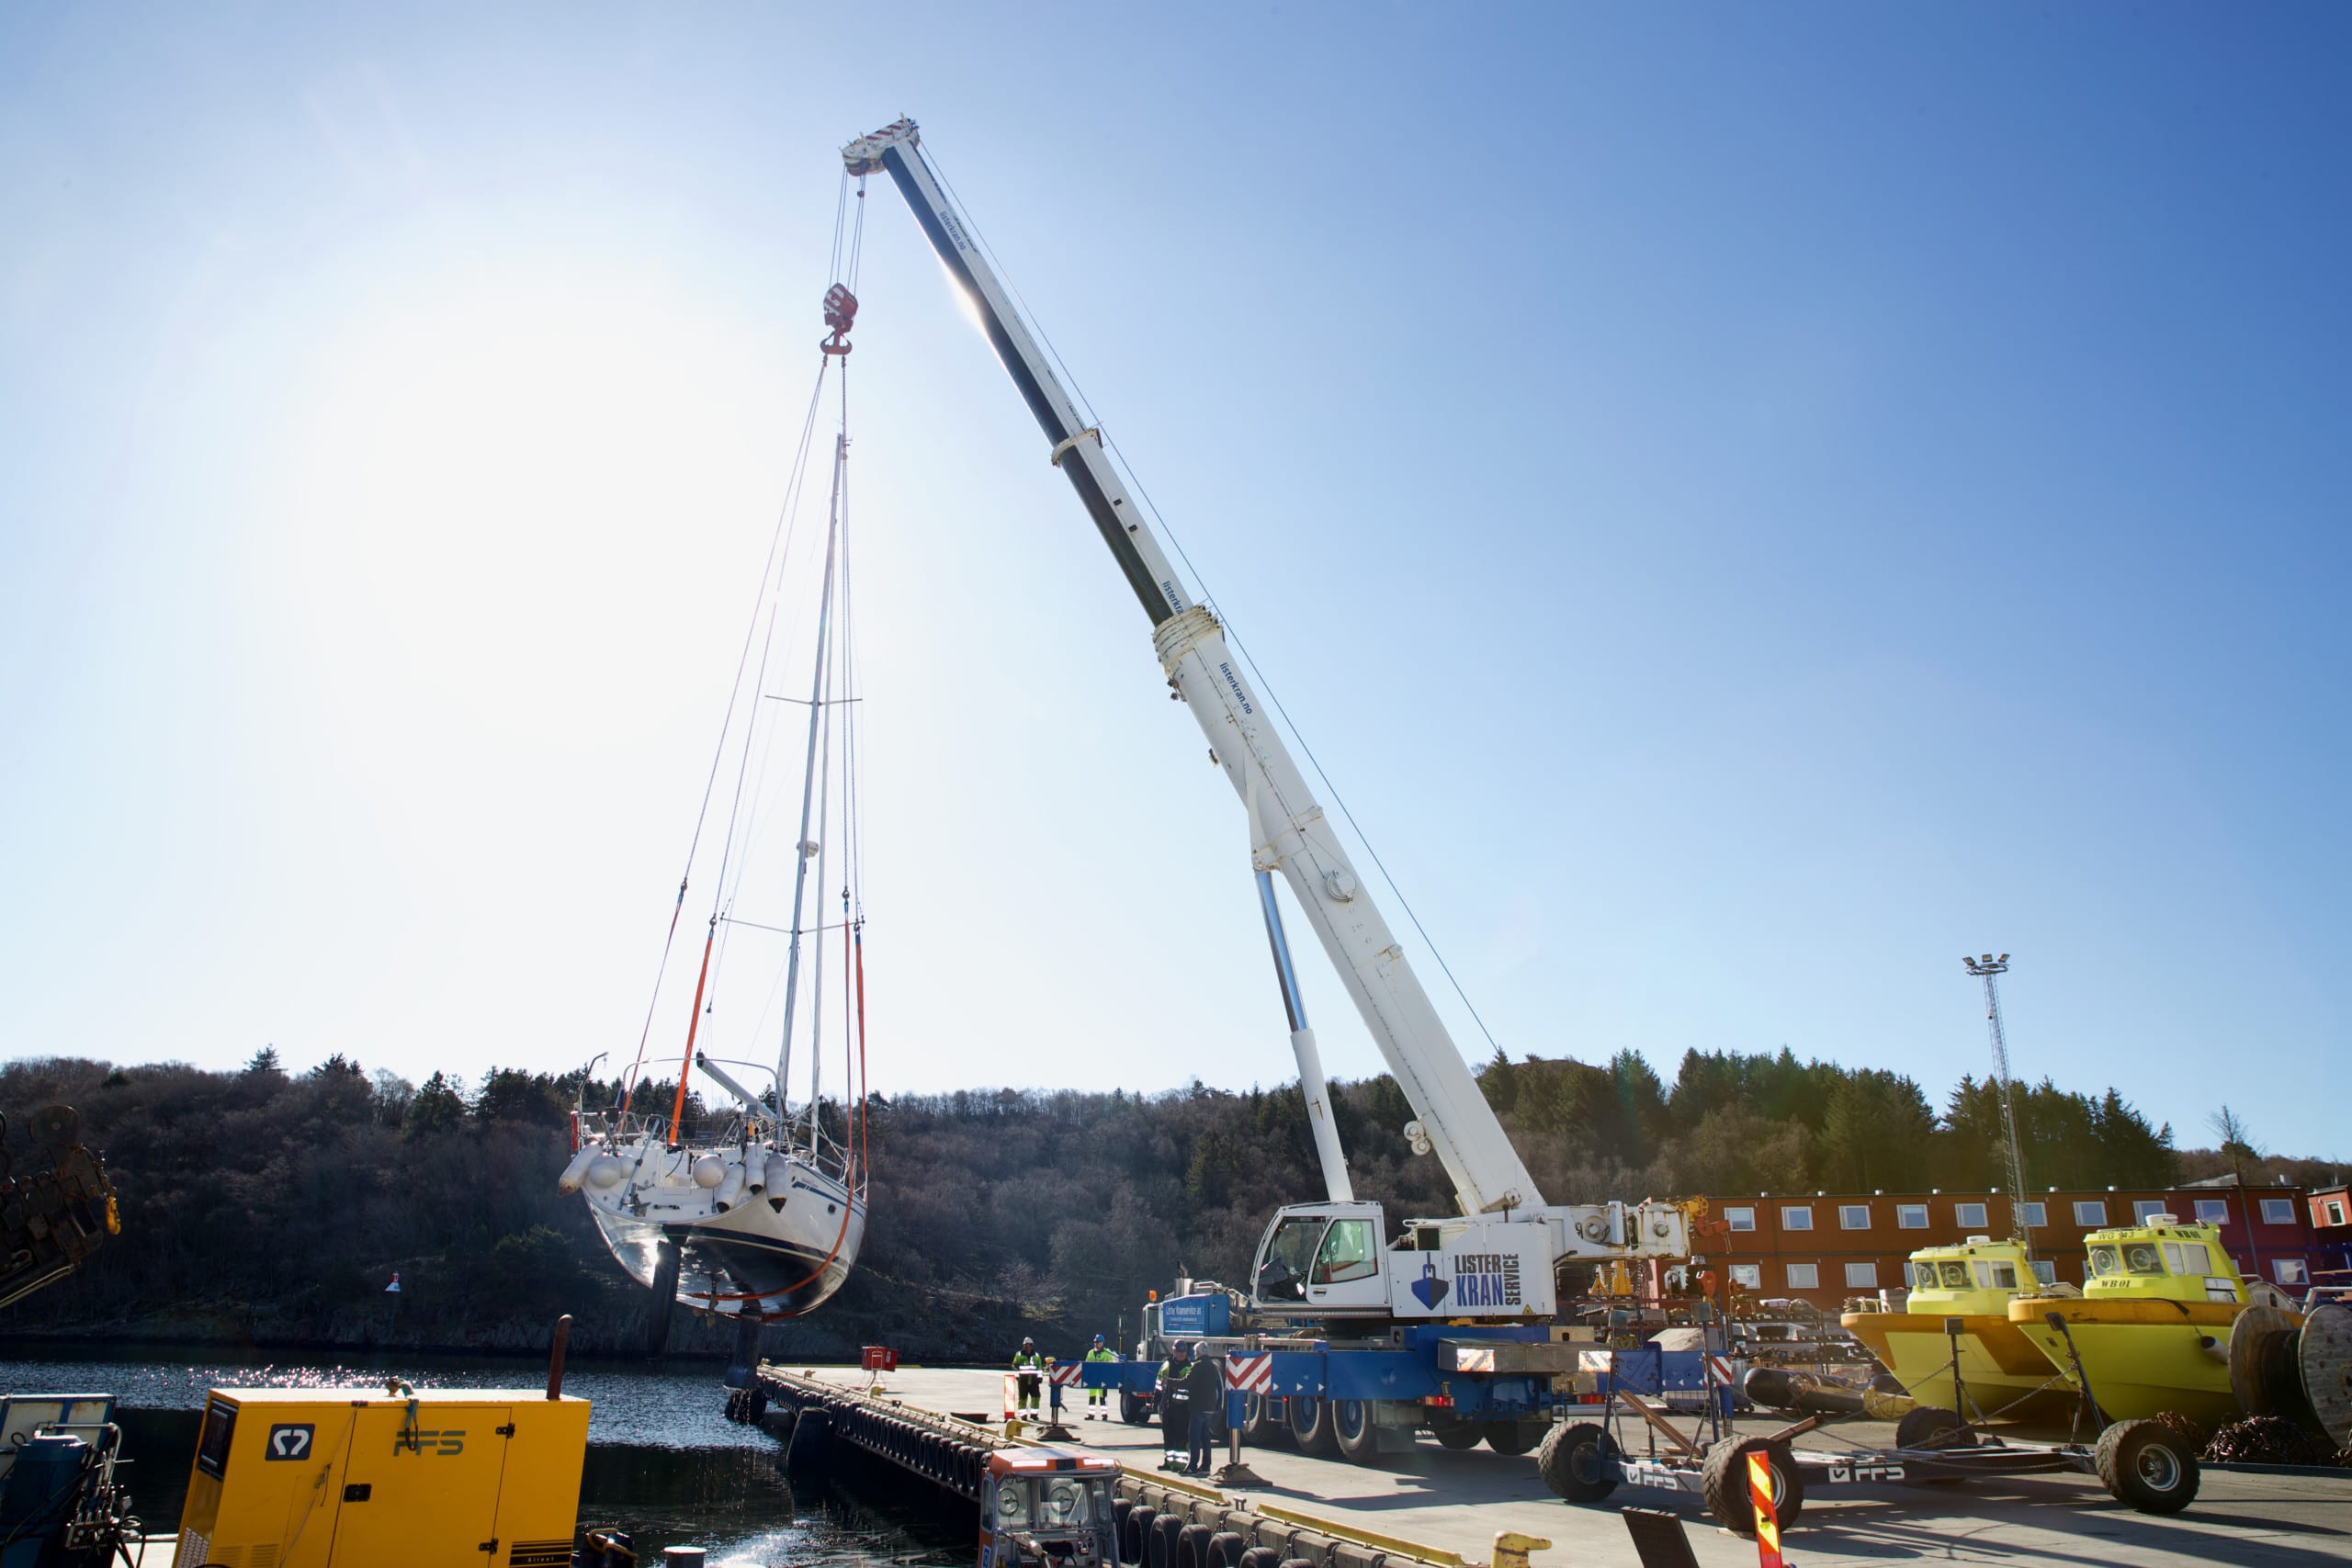 Å løfte en seilbåt på 10 tonn er ingenting for den største krana til Lister Kranservice. Den har en løftekapasitet på det tidobbelte.